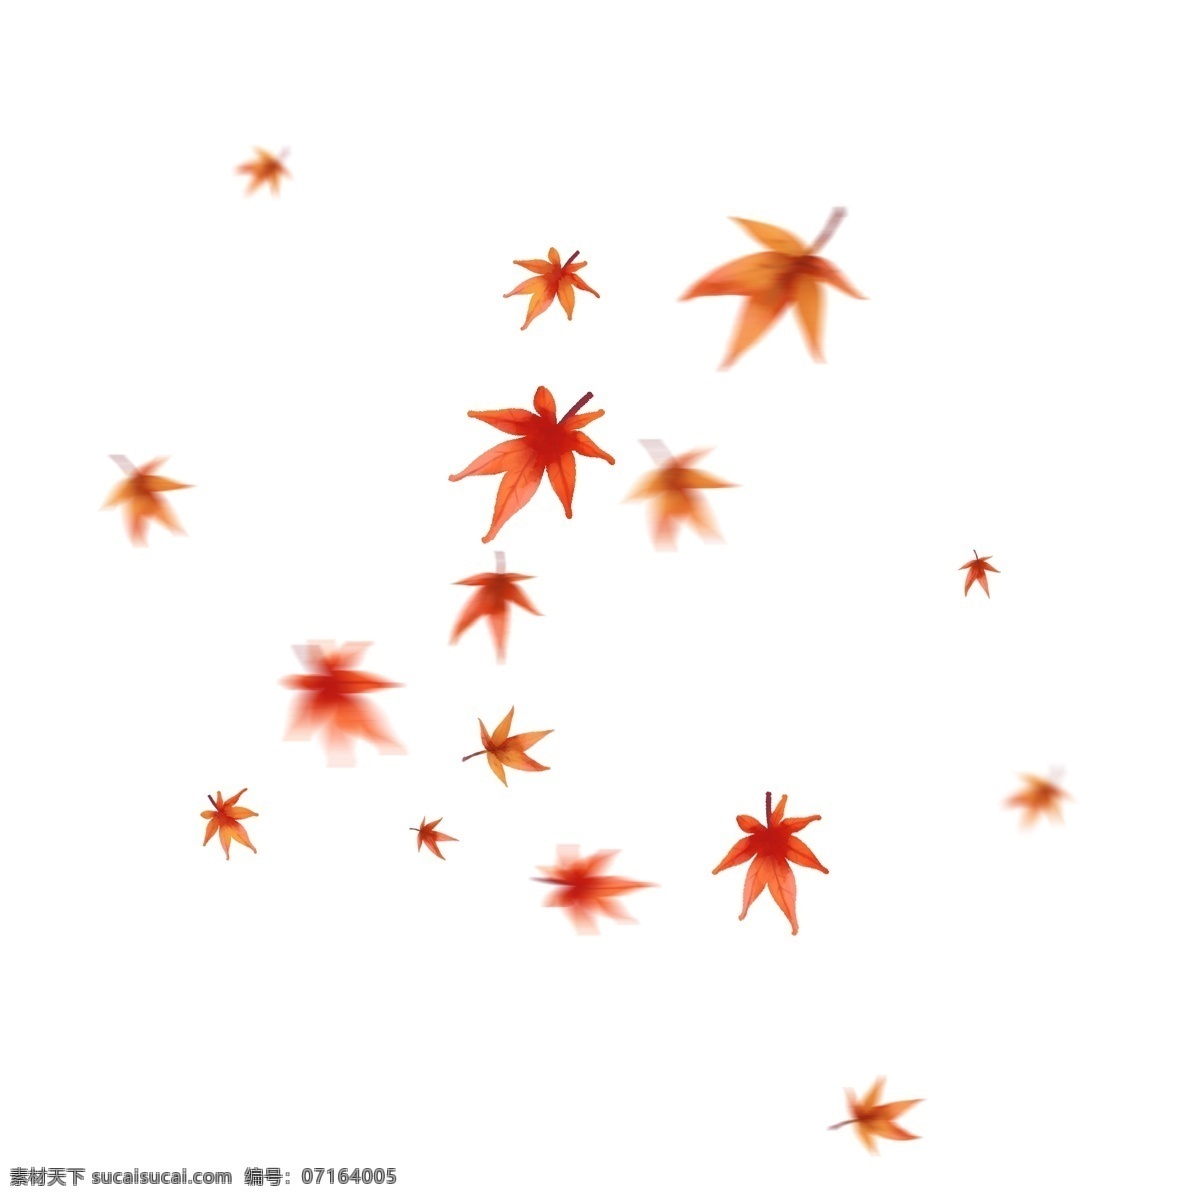 漂浮 枫叶 红色 叶子 飘落 橙红色 红色枫叶 橙红 唯美 漂浮的枫叶 漂浮的树叶 秋天 飞舞